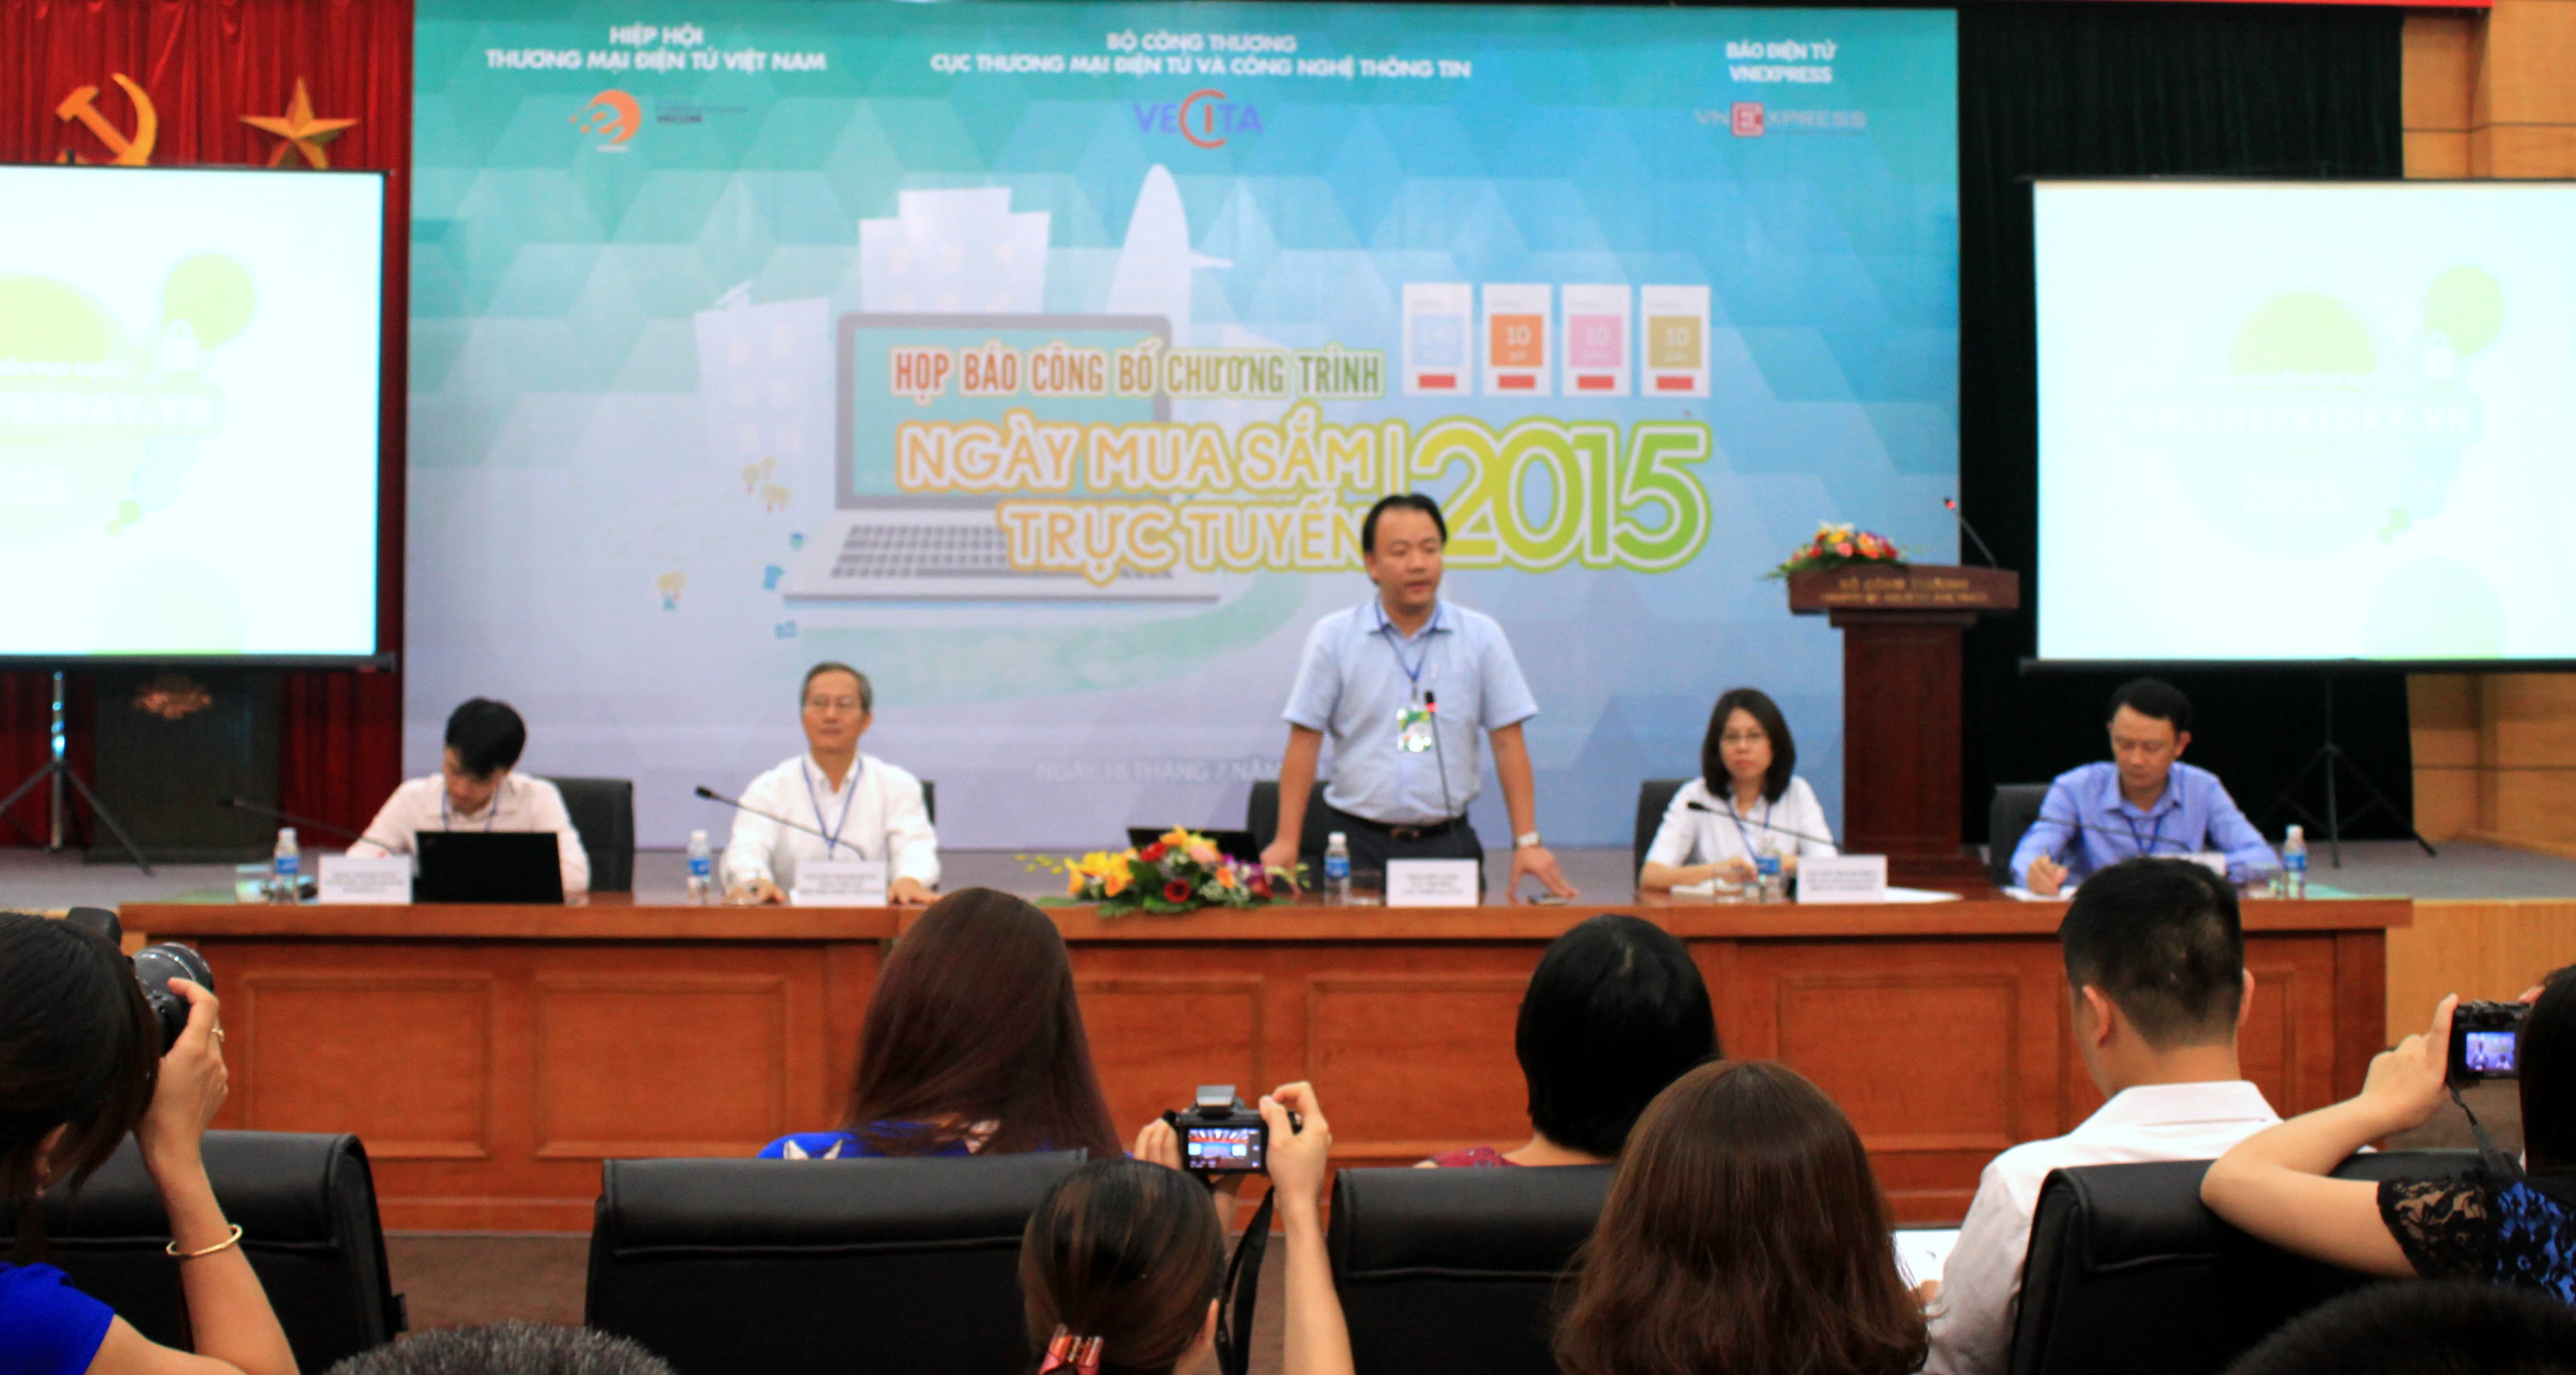 Ông Trần Hữu Linh - Cục trưởng Cục TMĐT - CNTT phát biểu tại buổi họp báo chiều ngày 16/07